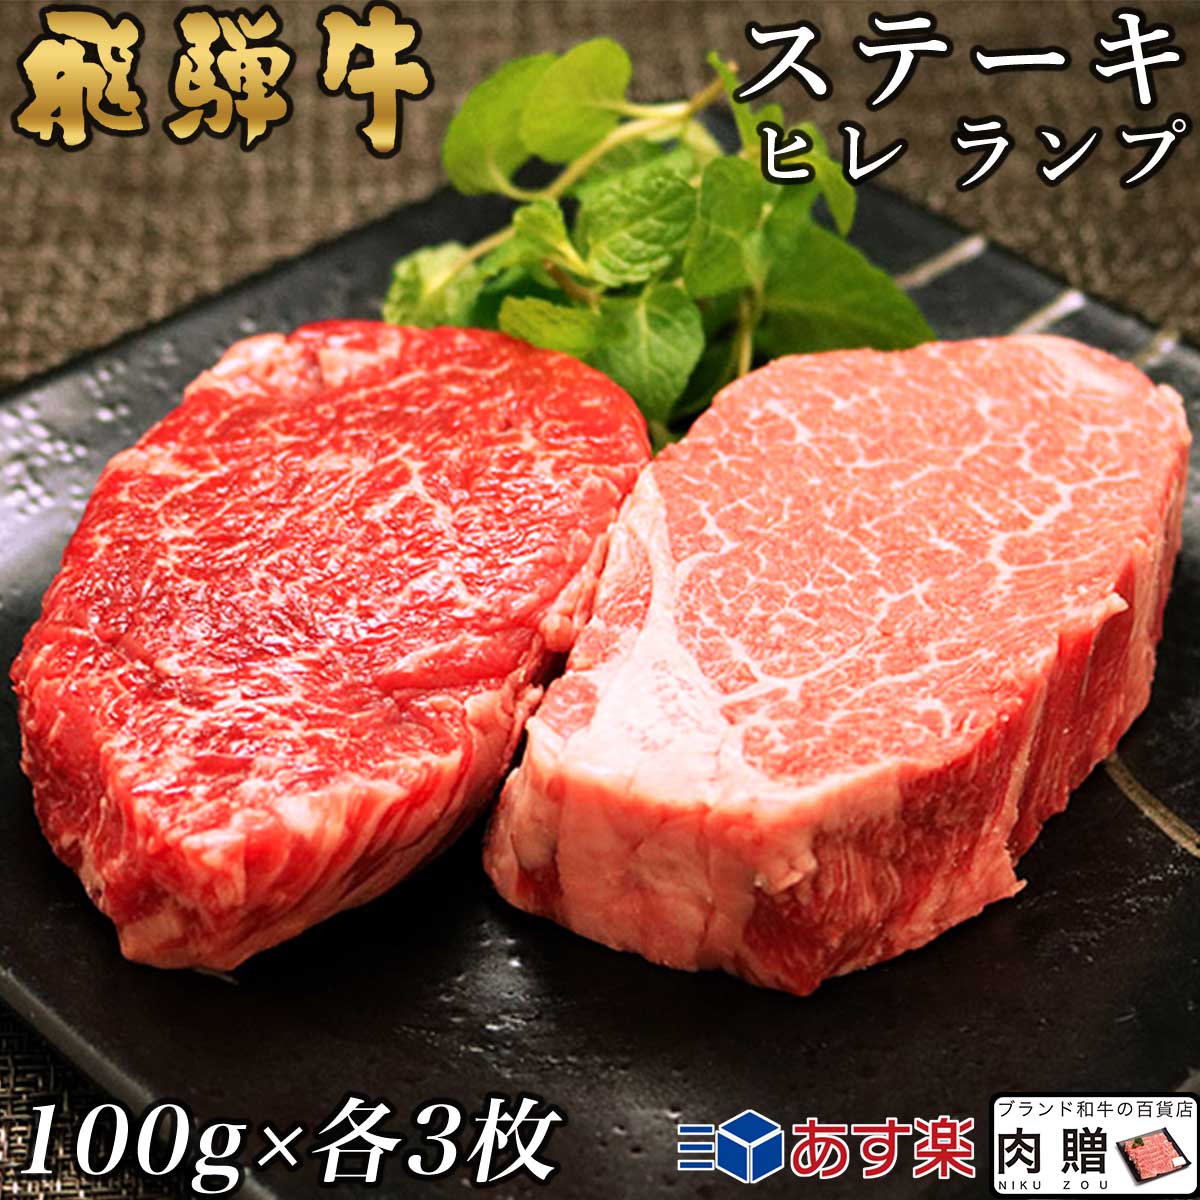 【楽天市場】お歳暮 肉 ギフト 早割 飛騨牛 食べ比べ セット ヒレ